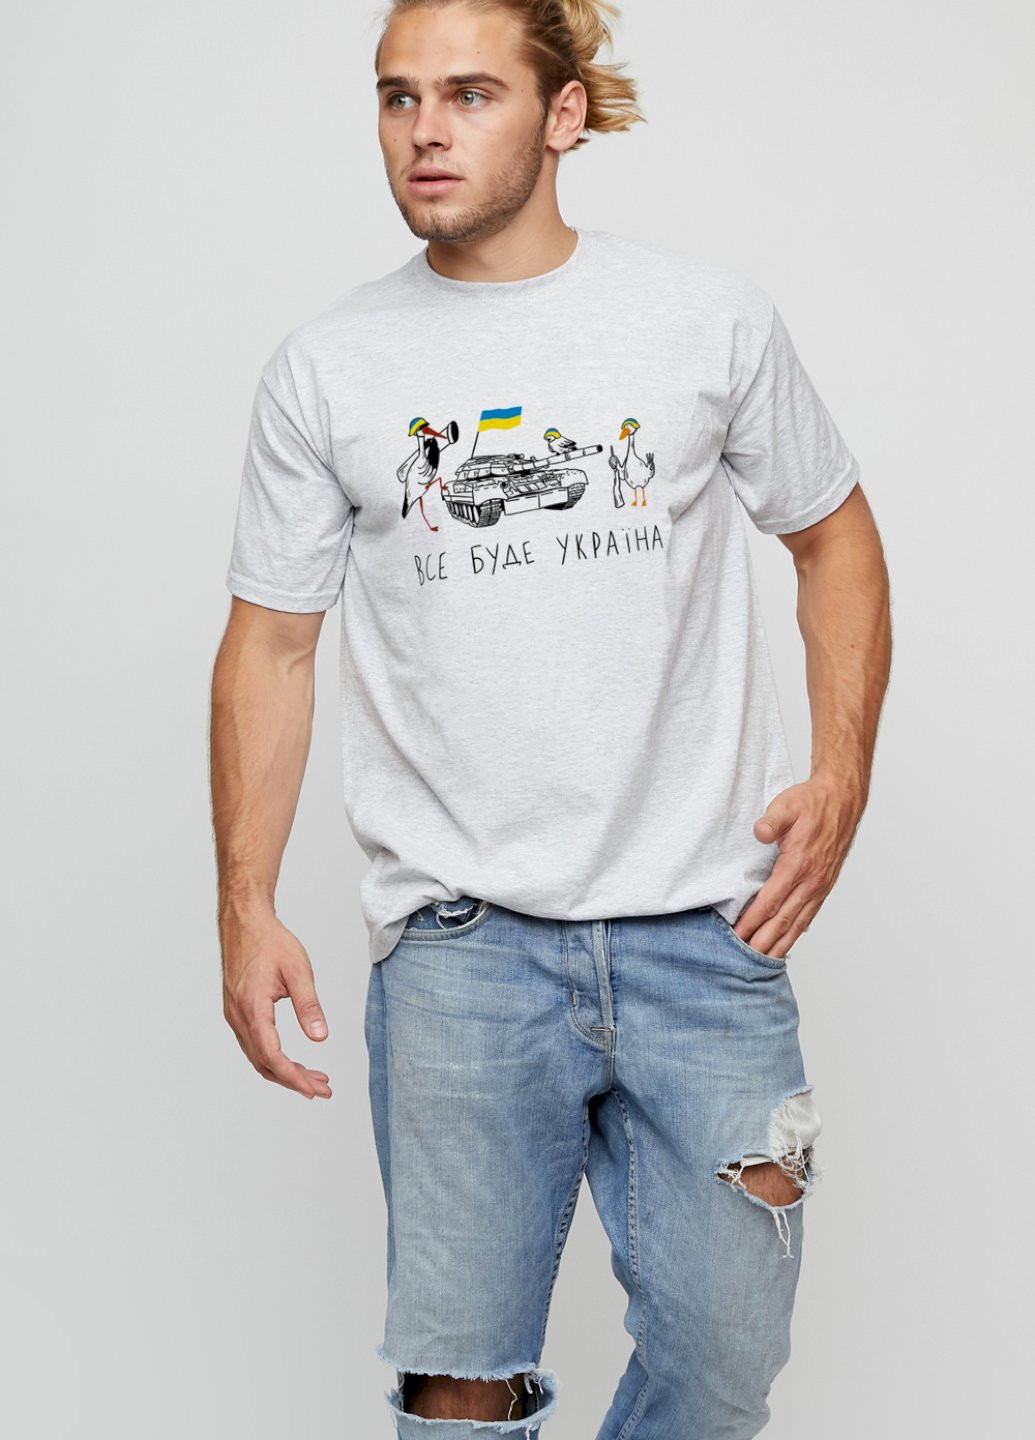 Сіра футболка чоловіча basic YAPPI